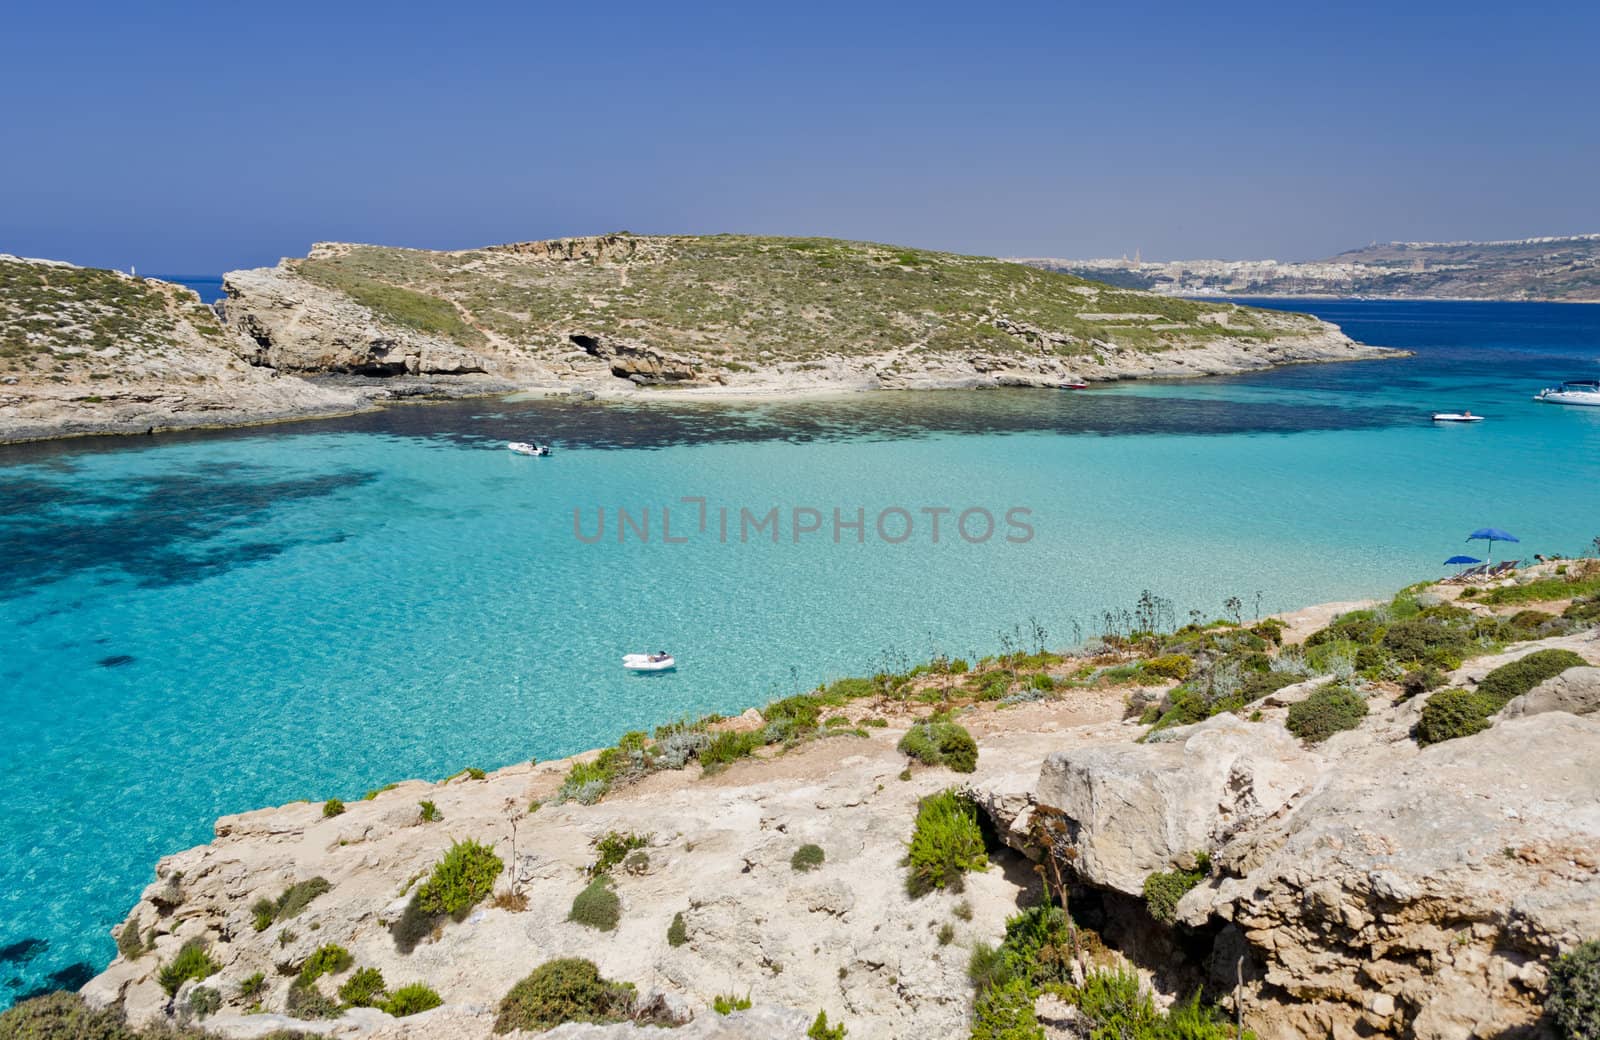 The Blue Lagoon - Comino, Malta